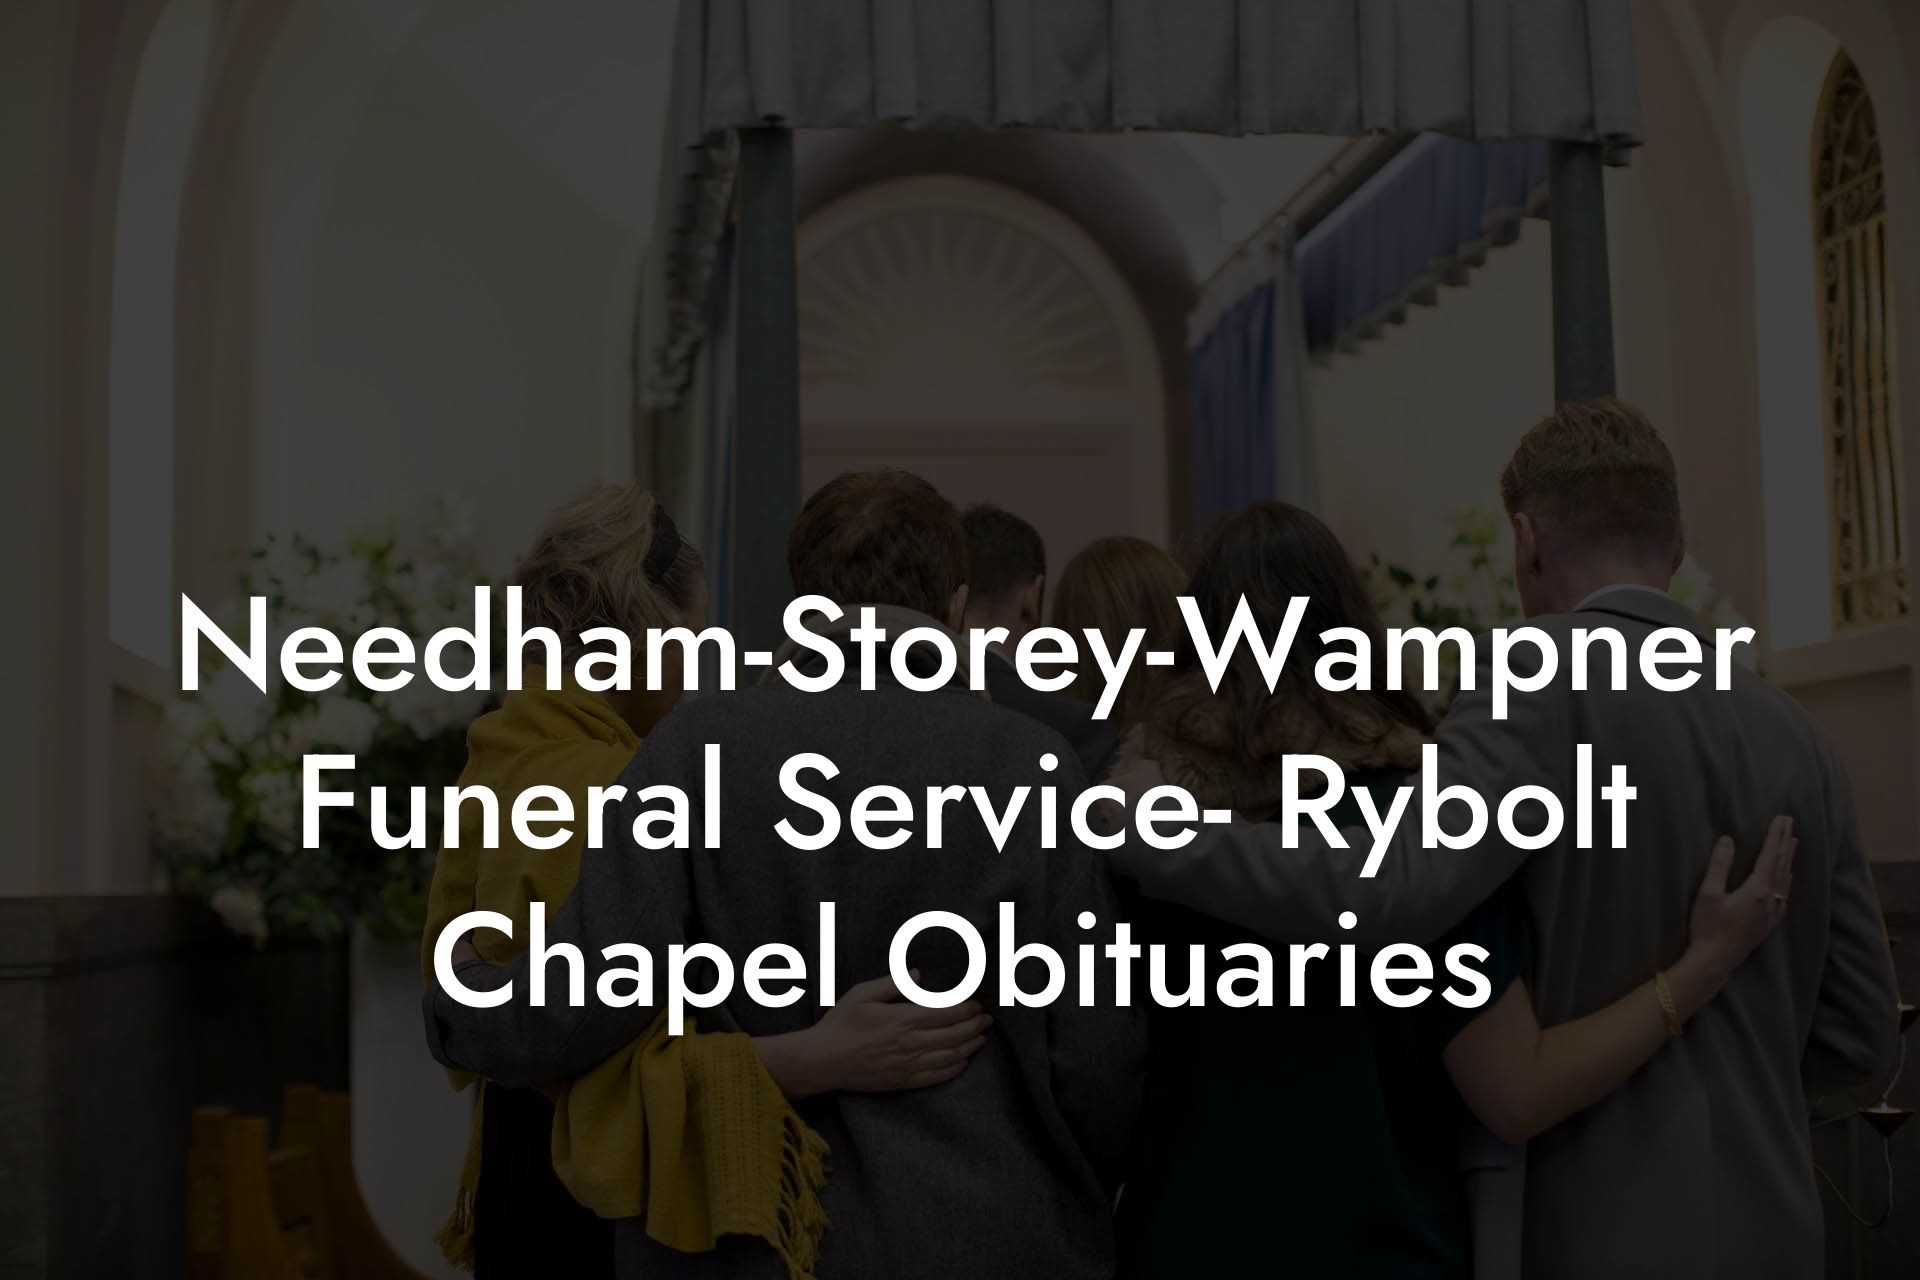 Needham-Storey-Wampner Funeral Service- Rybolt Chapel Obituaries